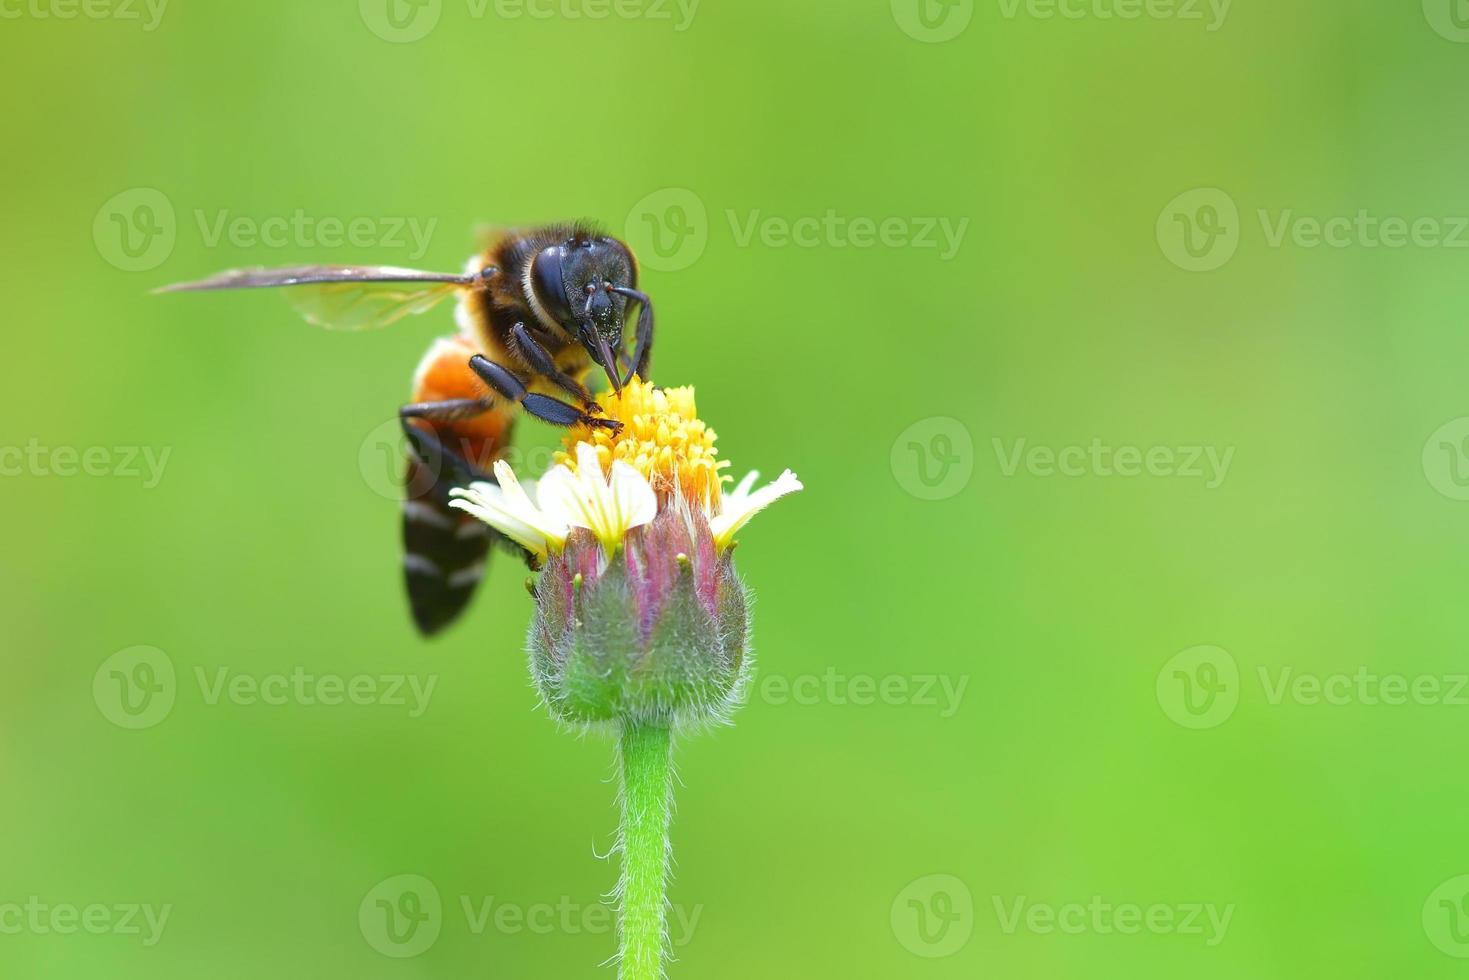 ett bi uppflugen på den vackra blomman foto